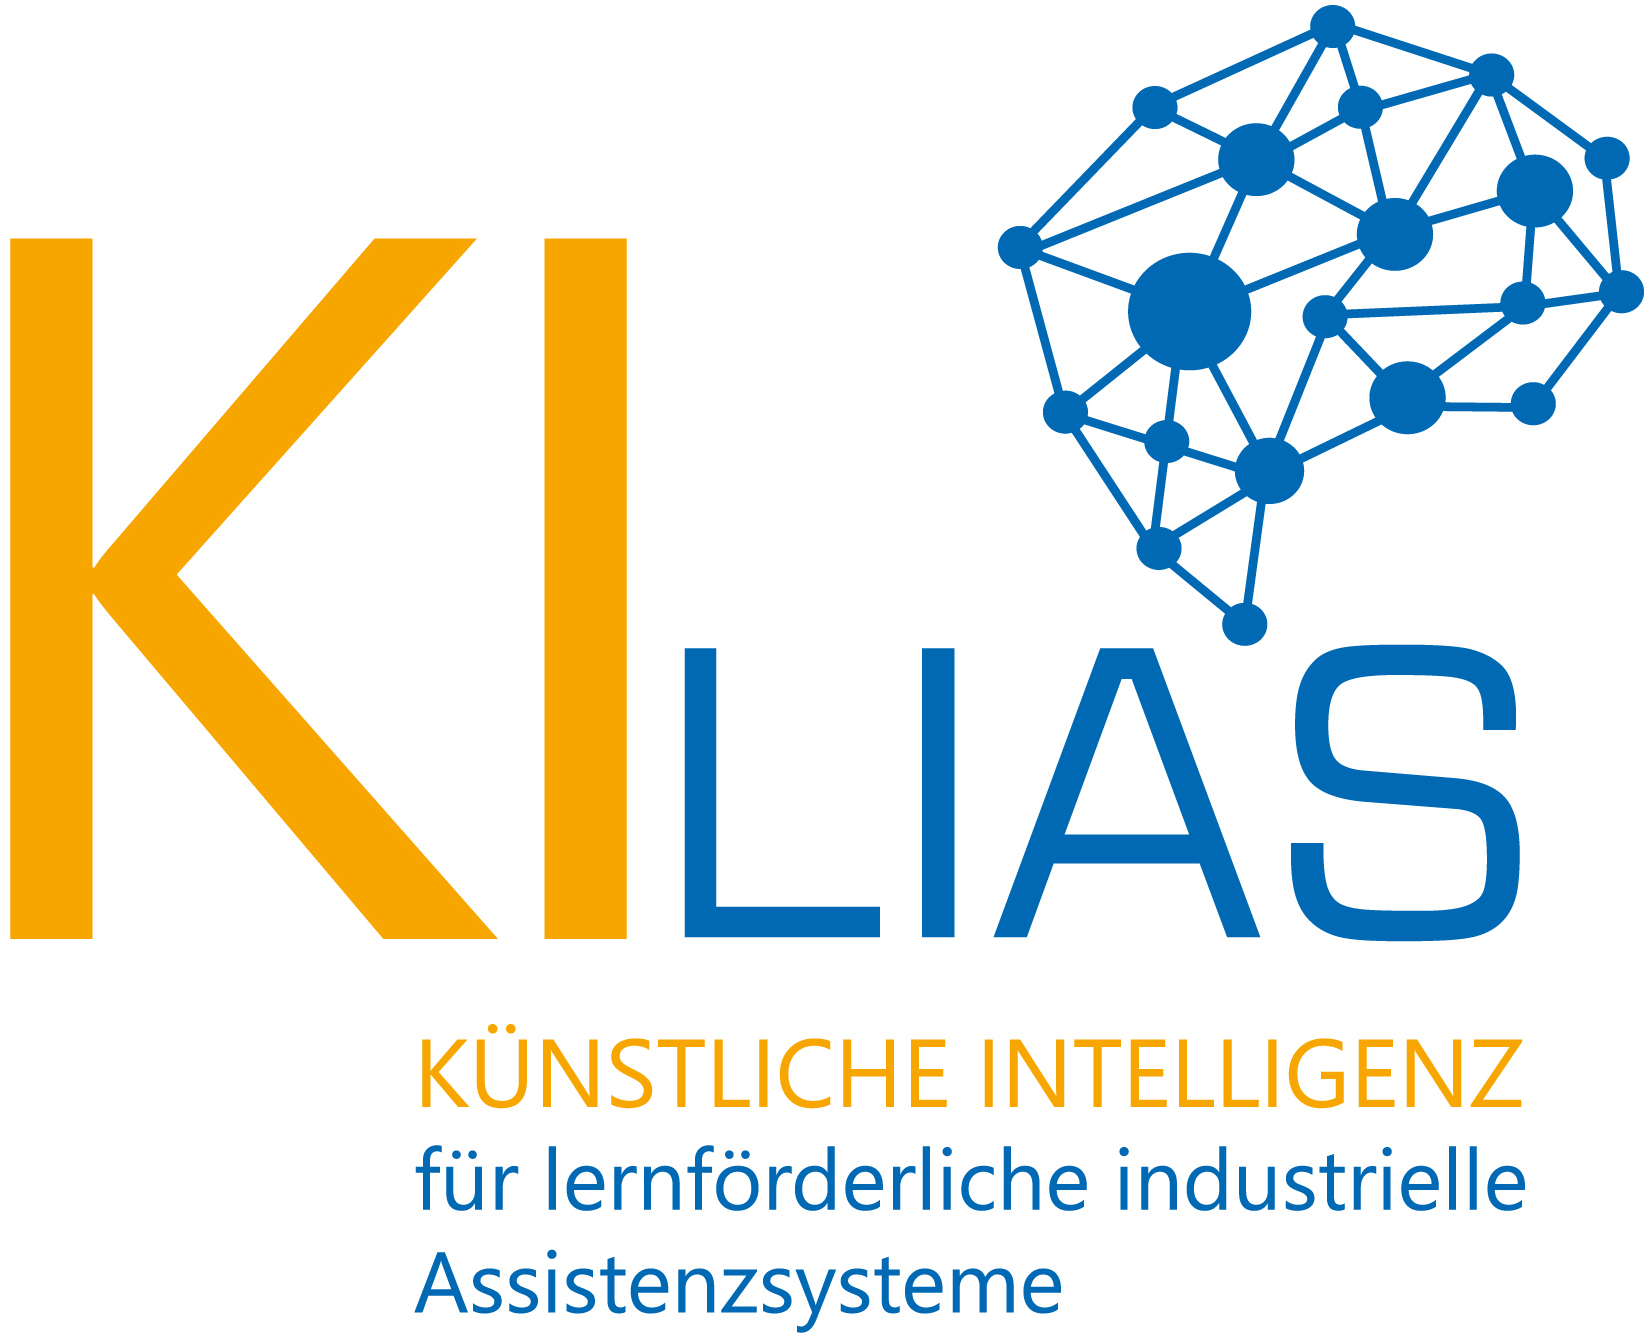 Projekt KI-Lias des Instituts für Arbeitswissenschaft der RWTH Aachen